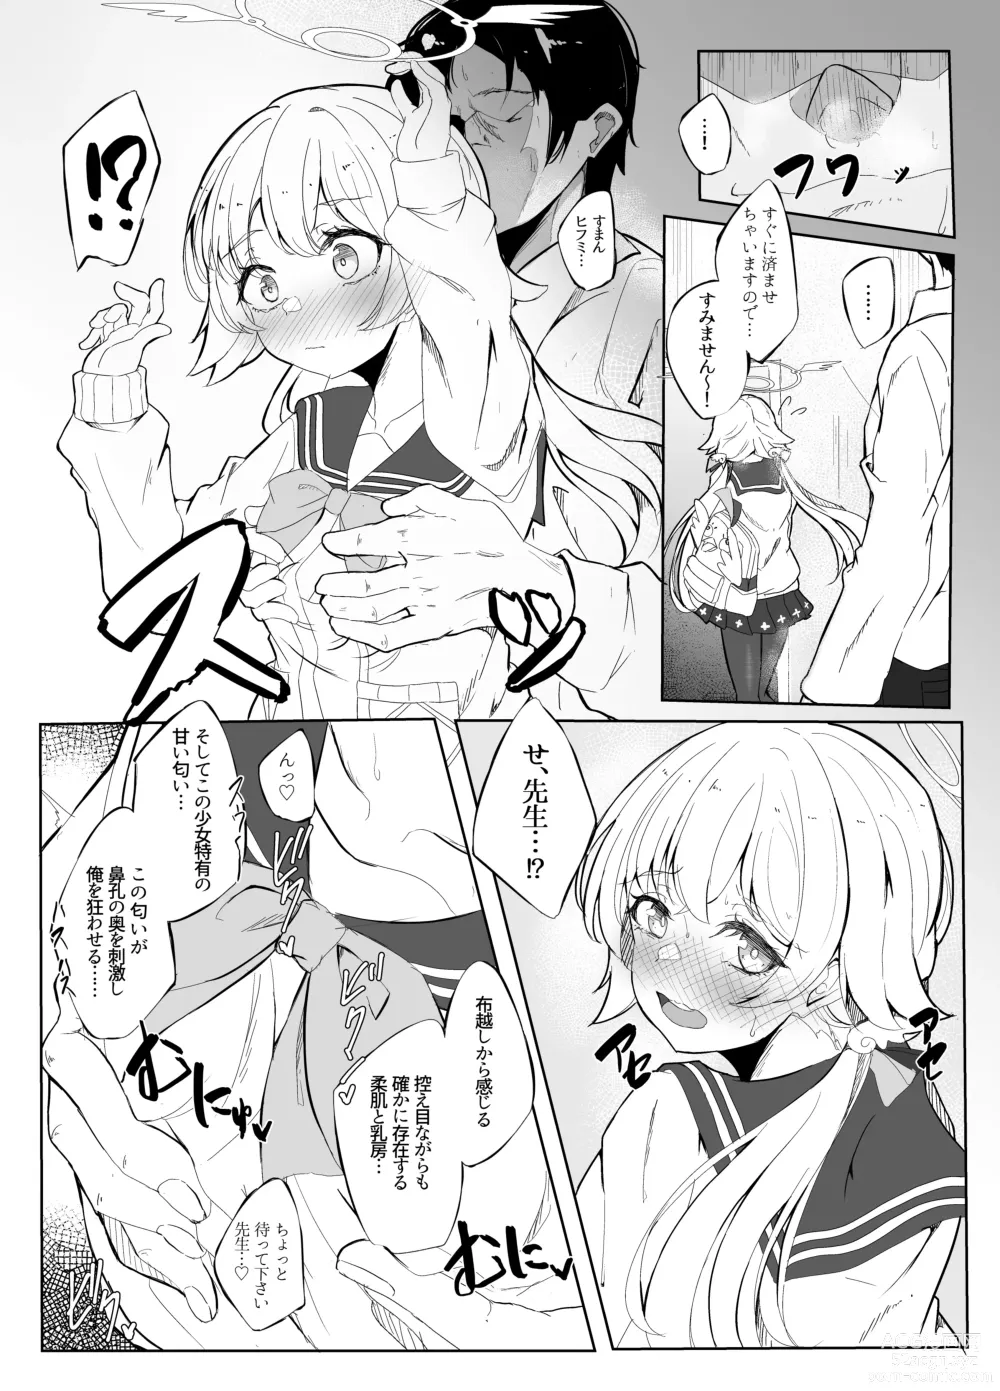 Page 5 of doujinshi Hifumi ga Ii nioi no hon